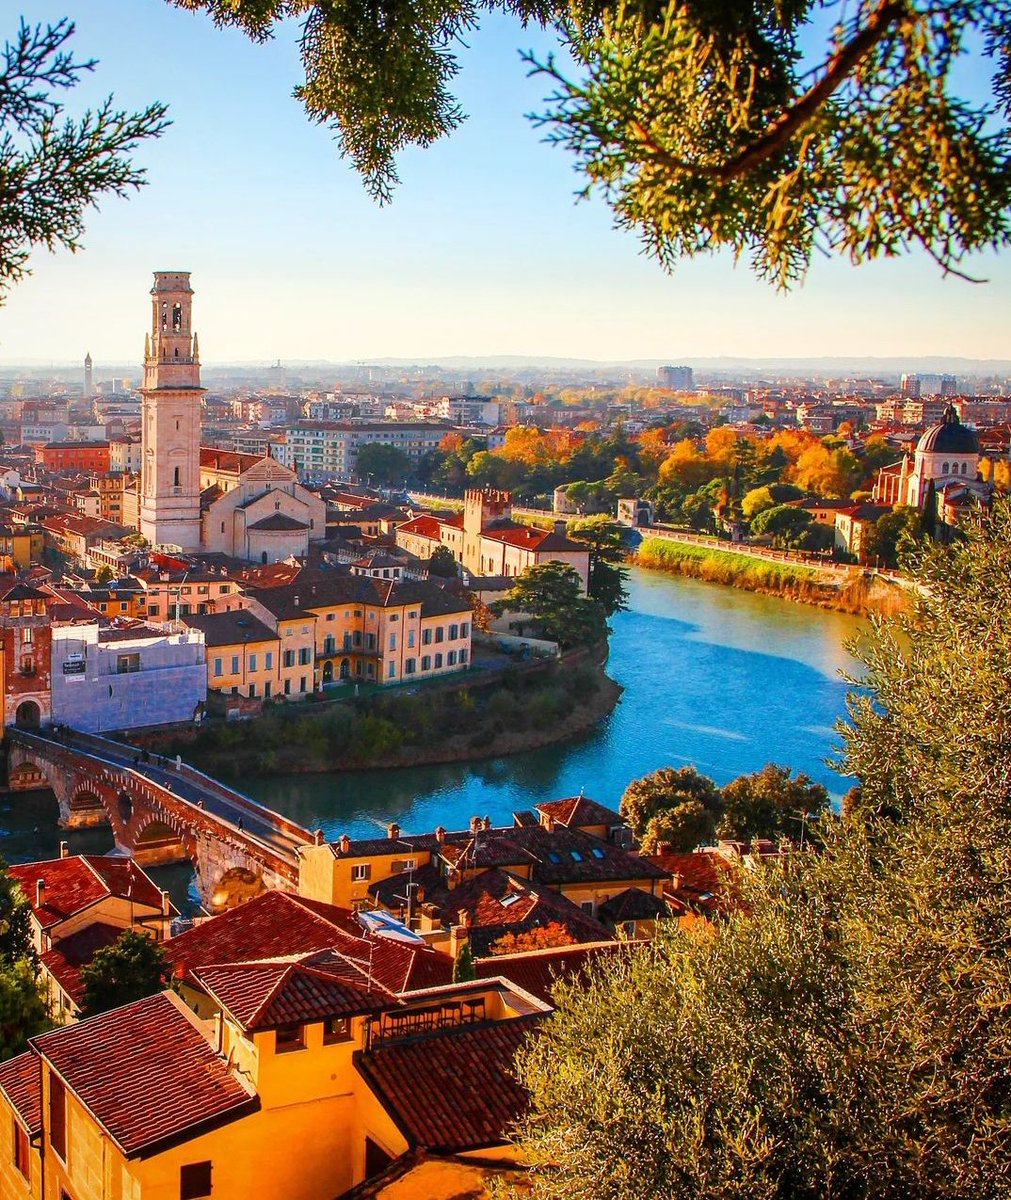 Verona, Italy 🇮🇹